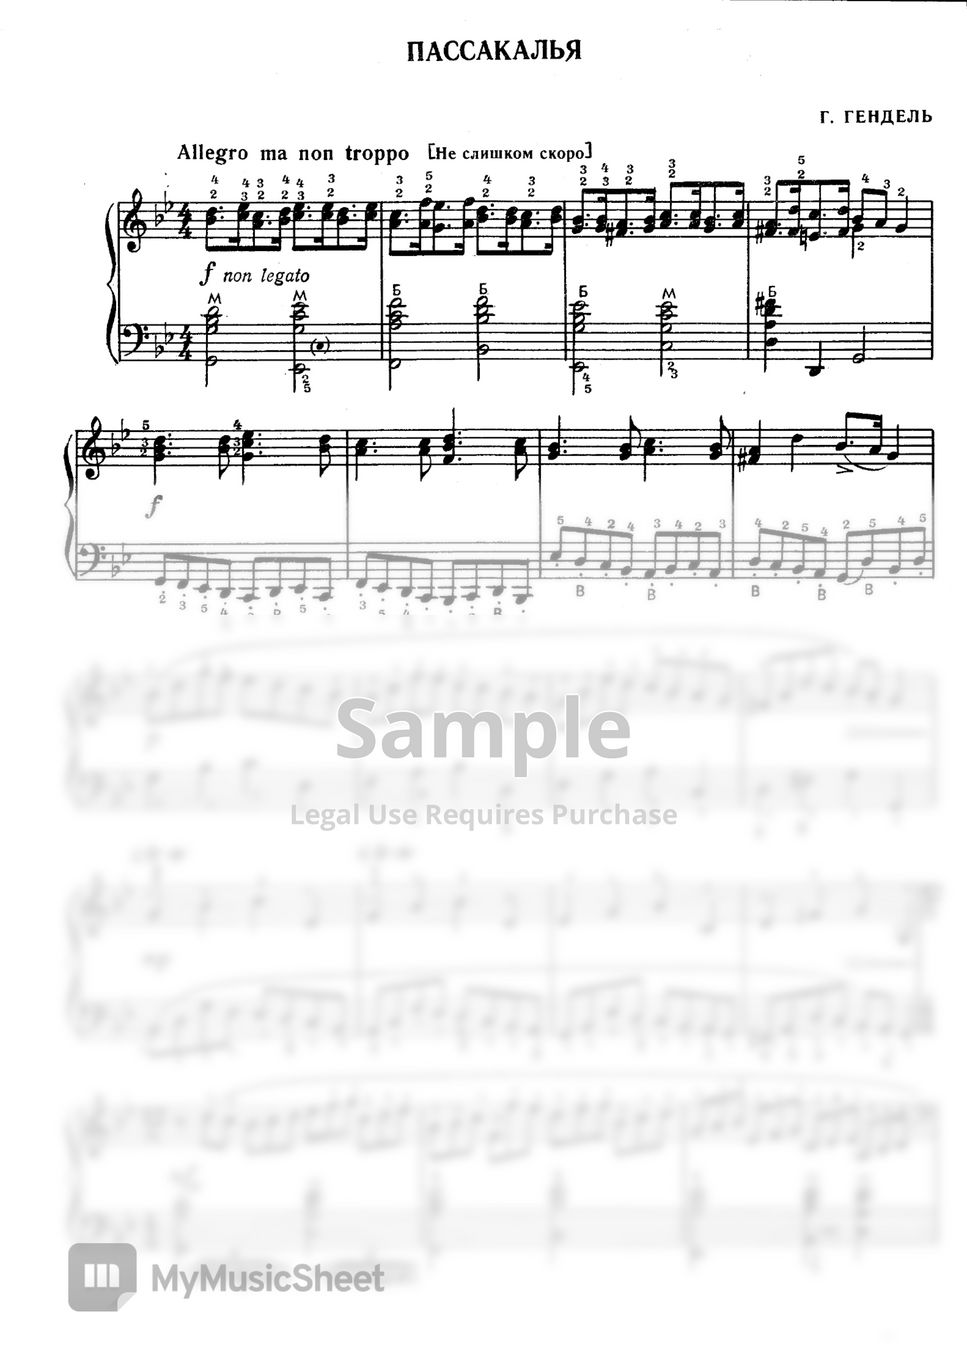 Handel - "Passacaglia" from Suite No 7 in G-minor